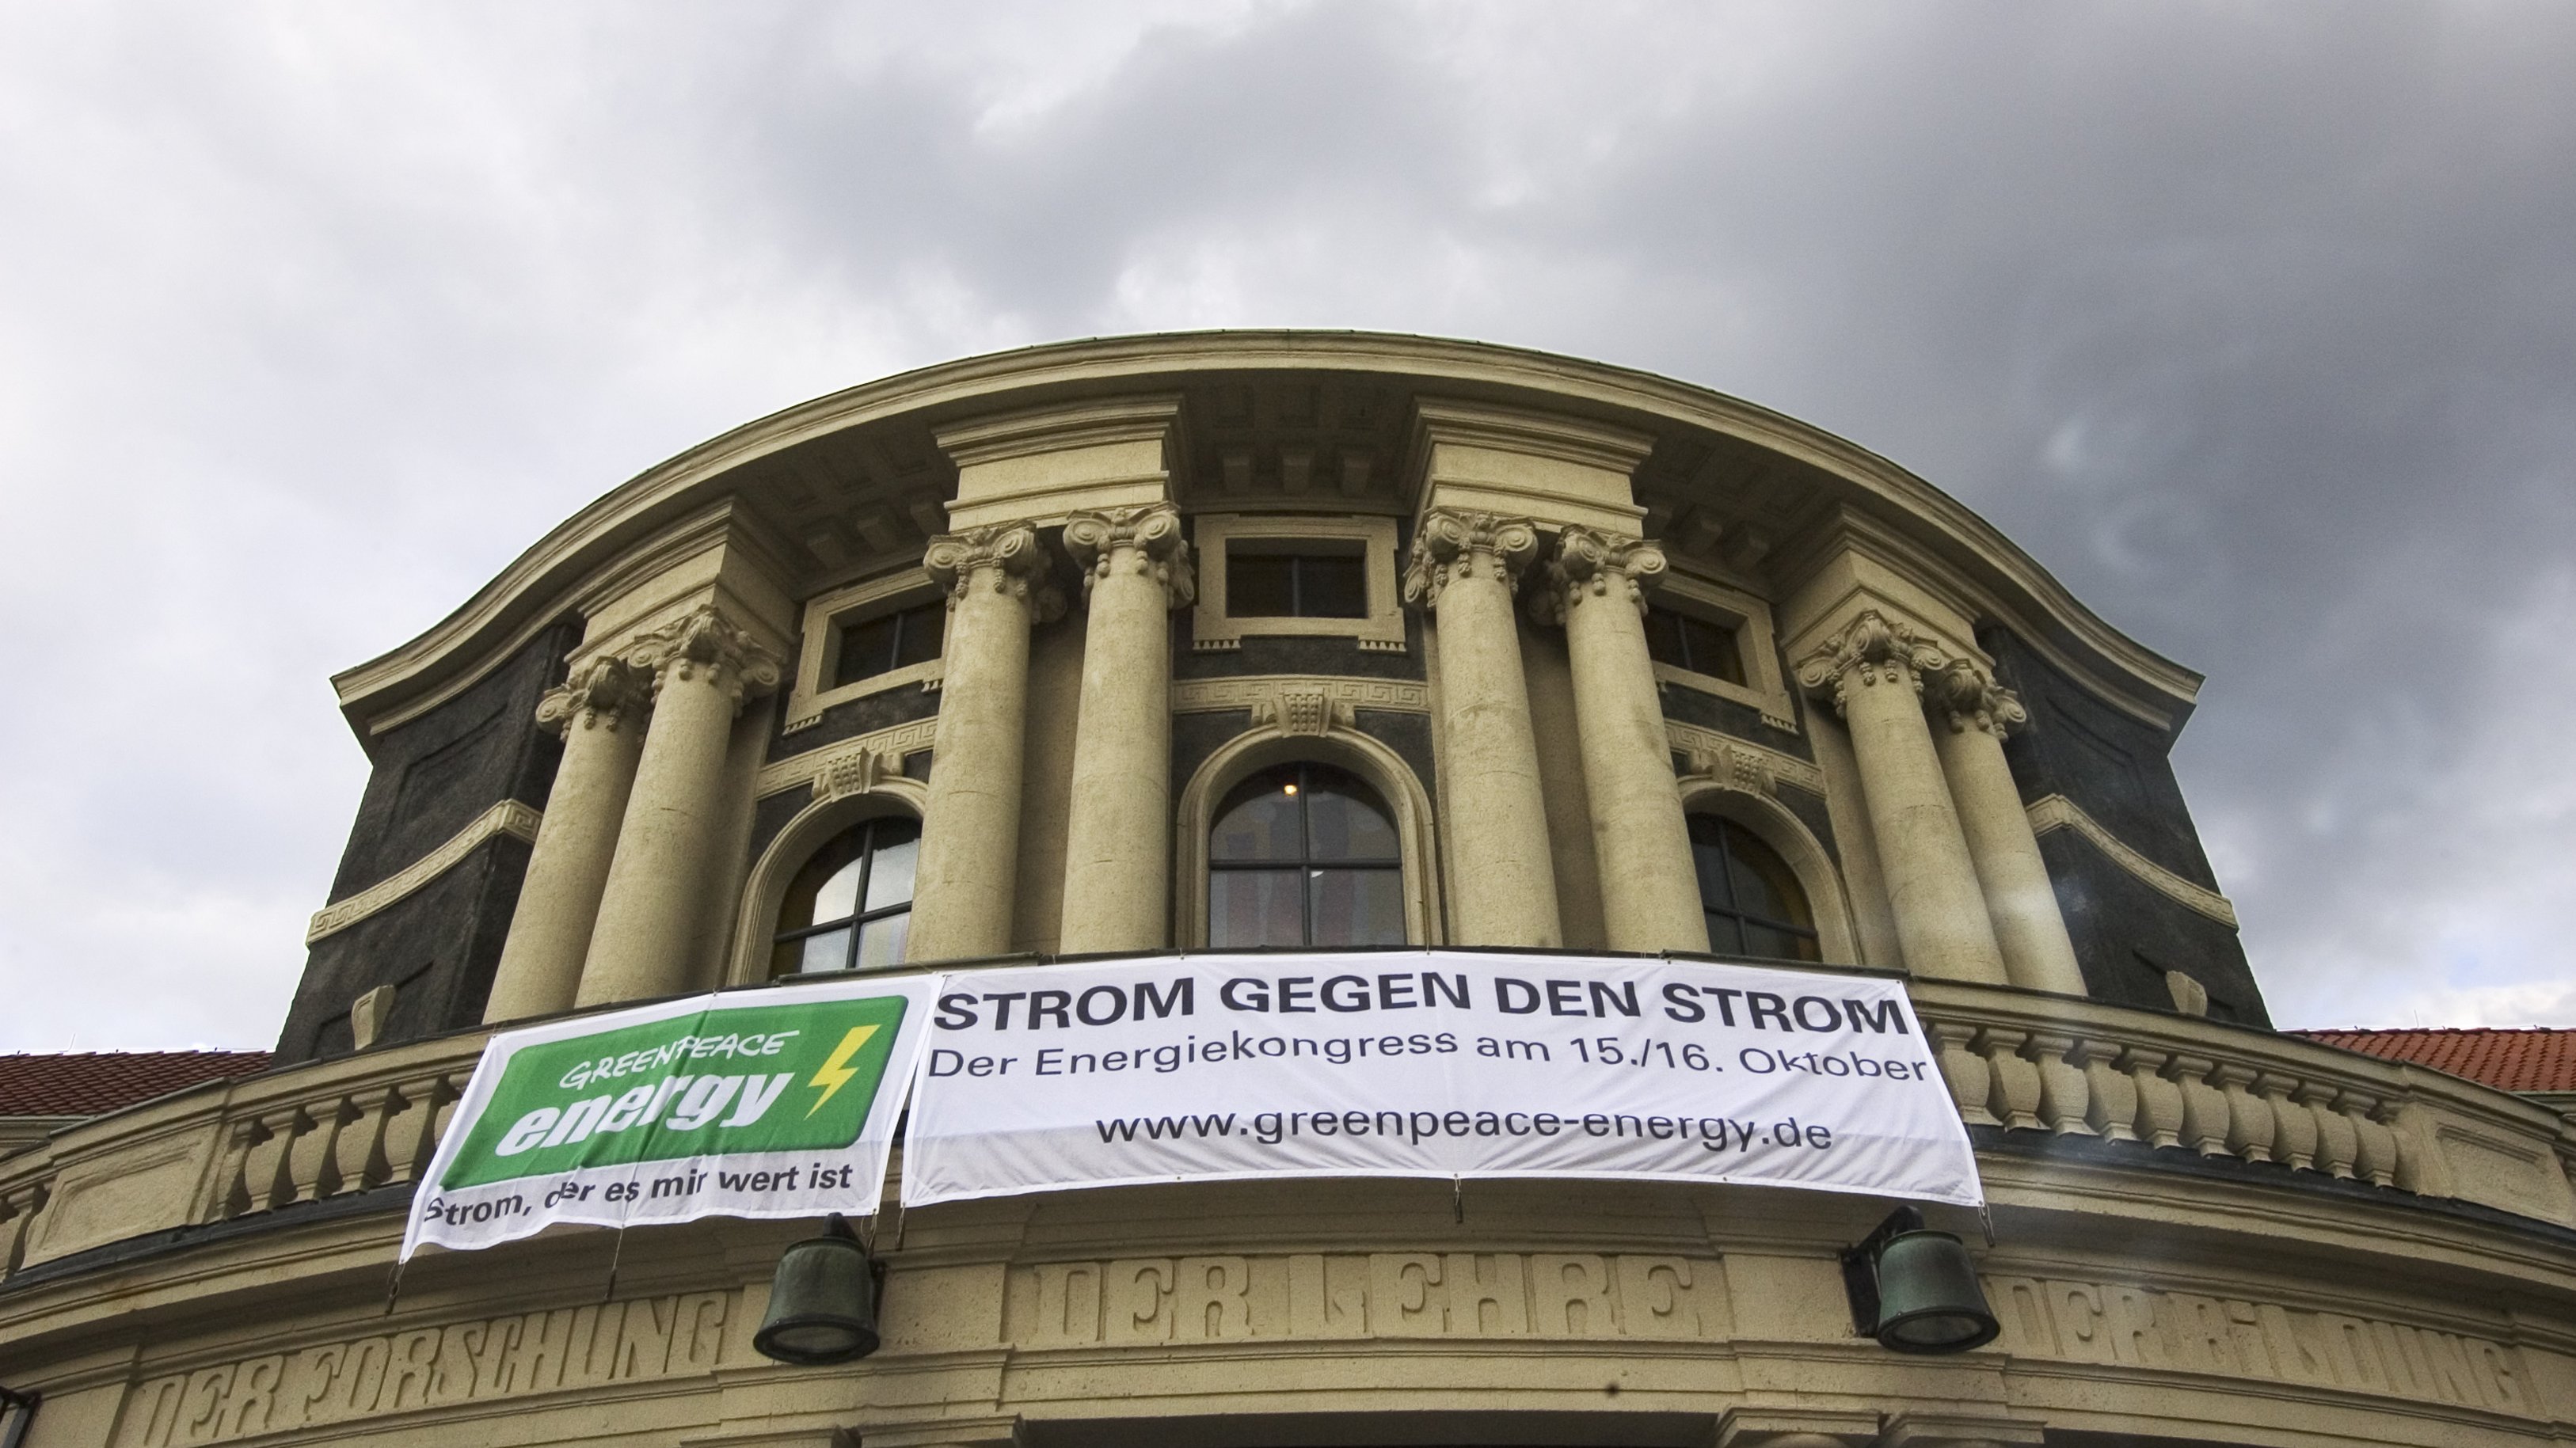 Gebäudefront der Universität Hamburg mit großem Banner zum Energiekongress "Strom gegen den Strom" von Greenpeace Energy